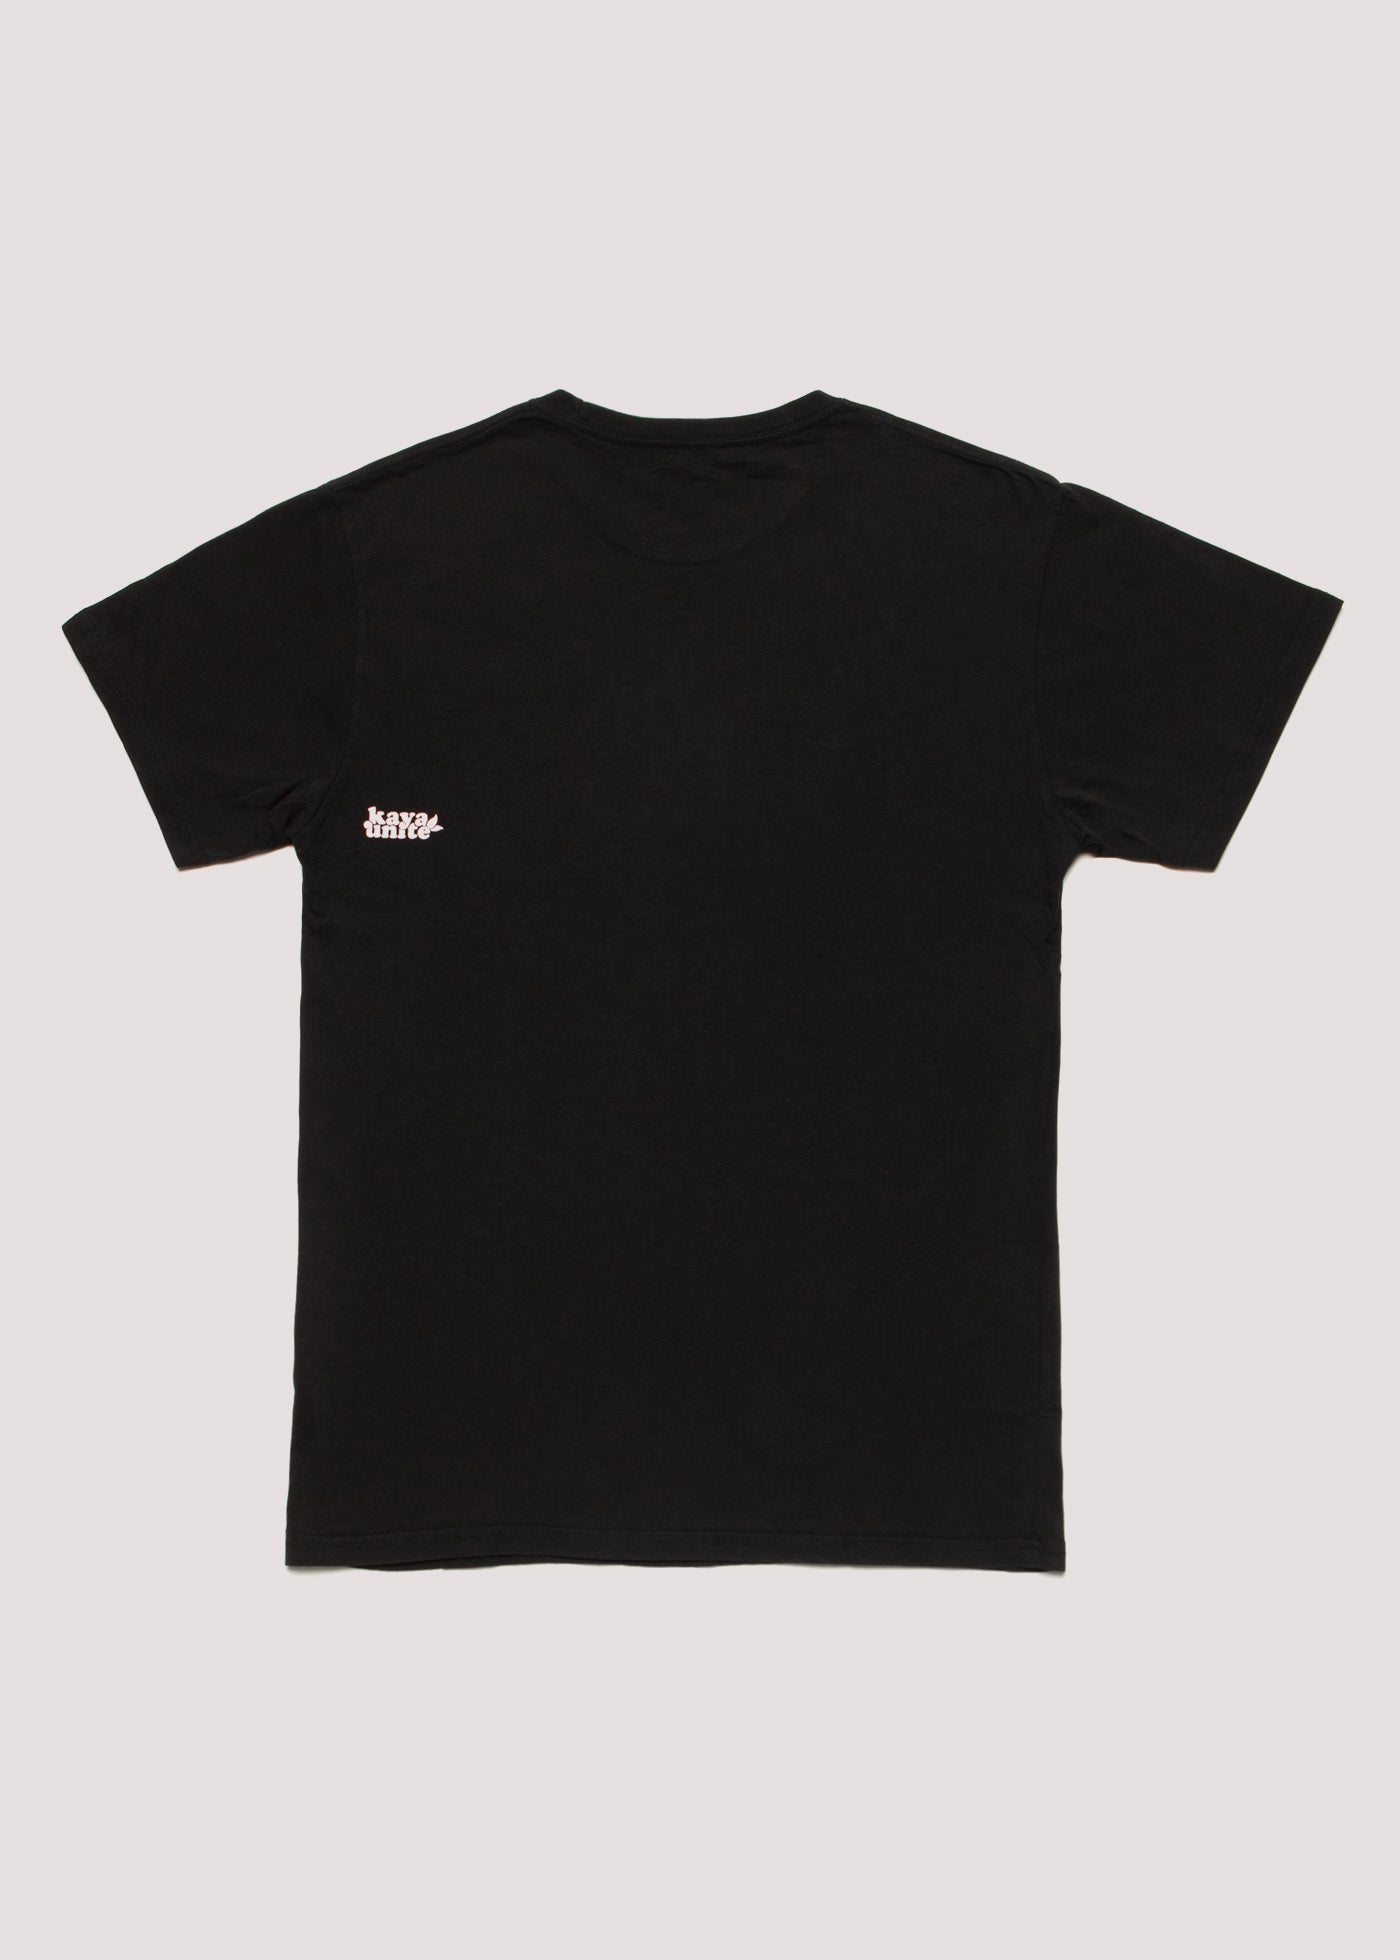 T-Shirt Classy Black